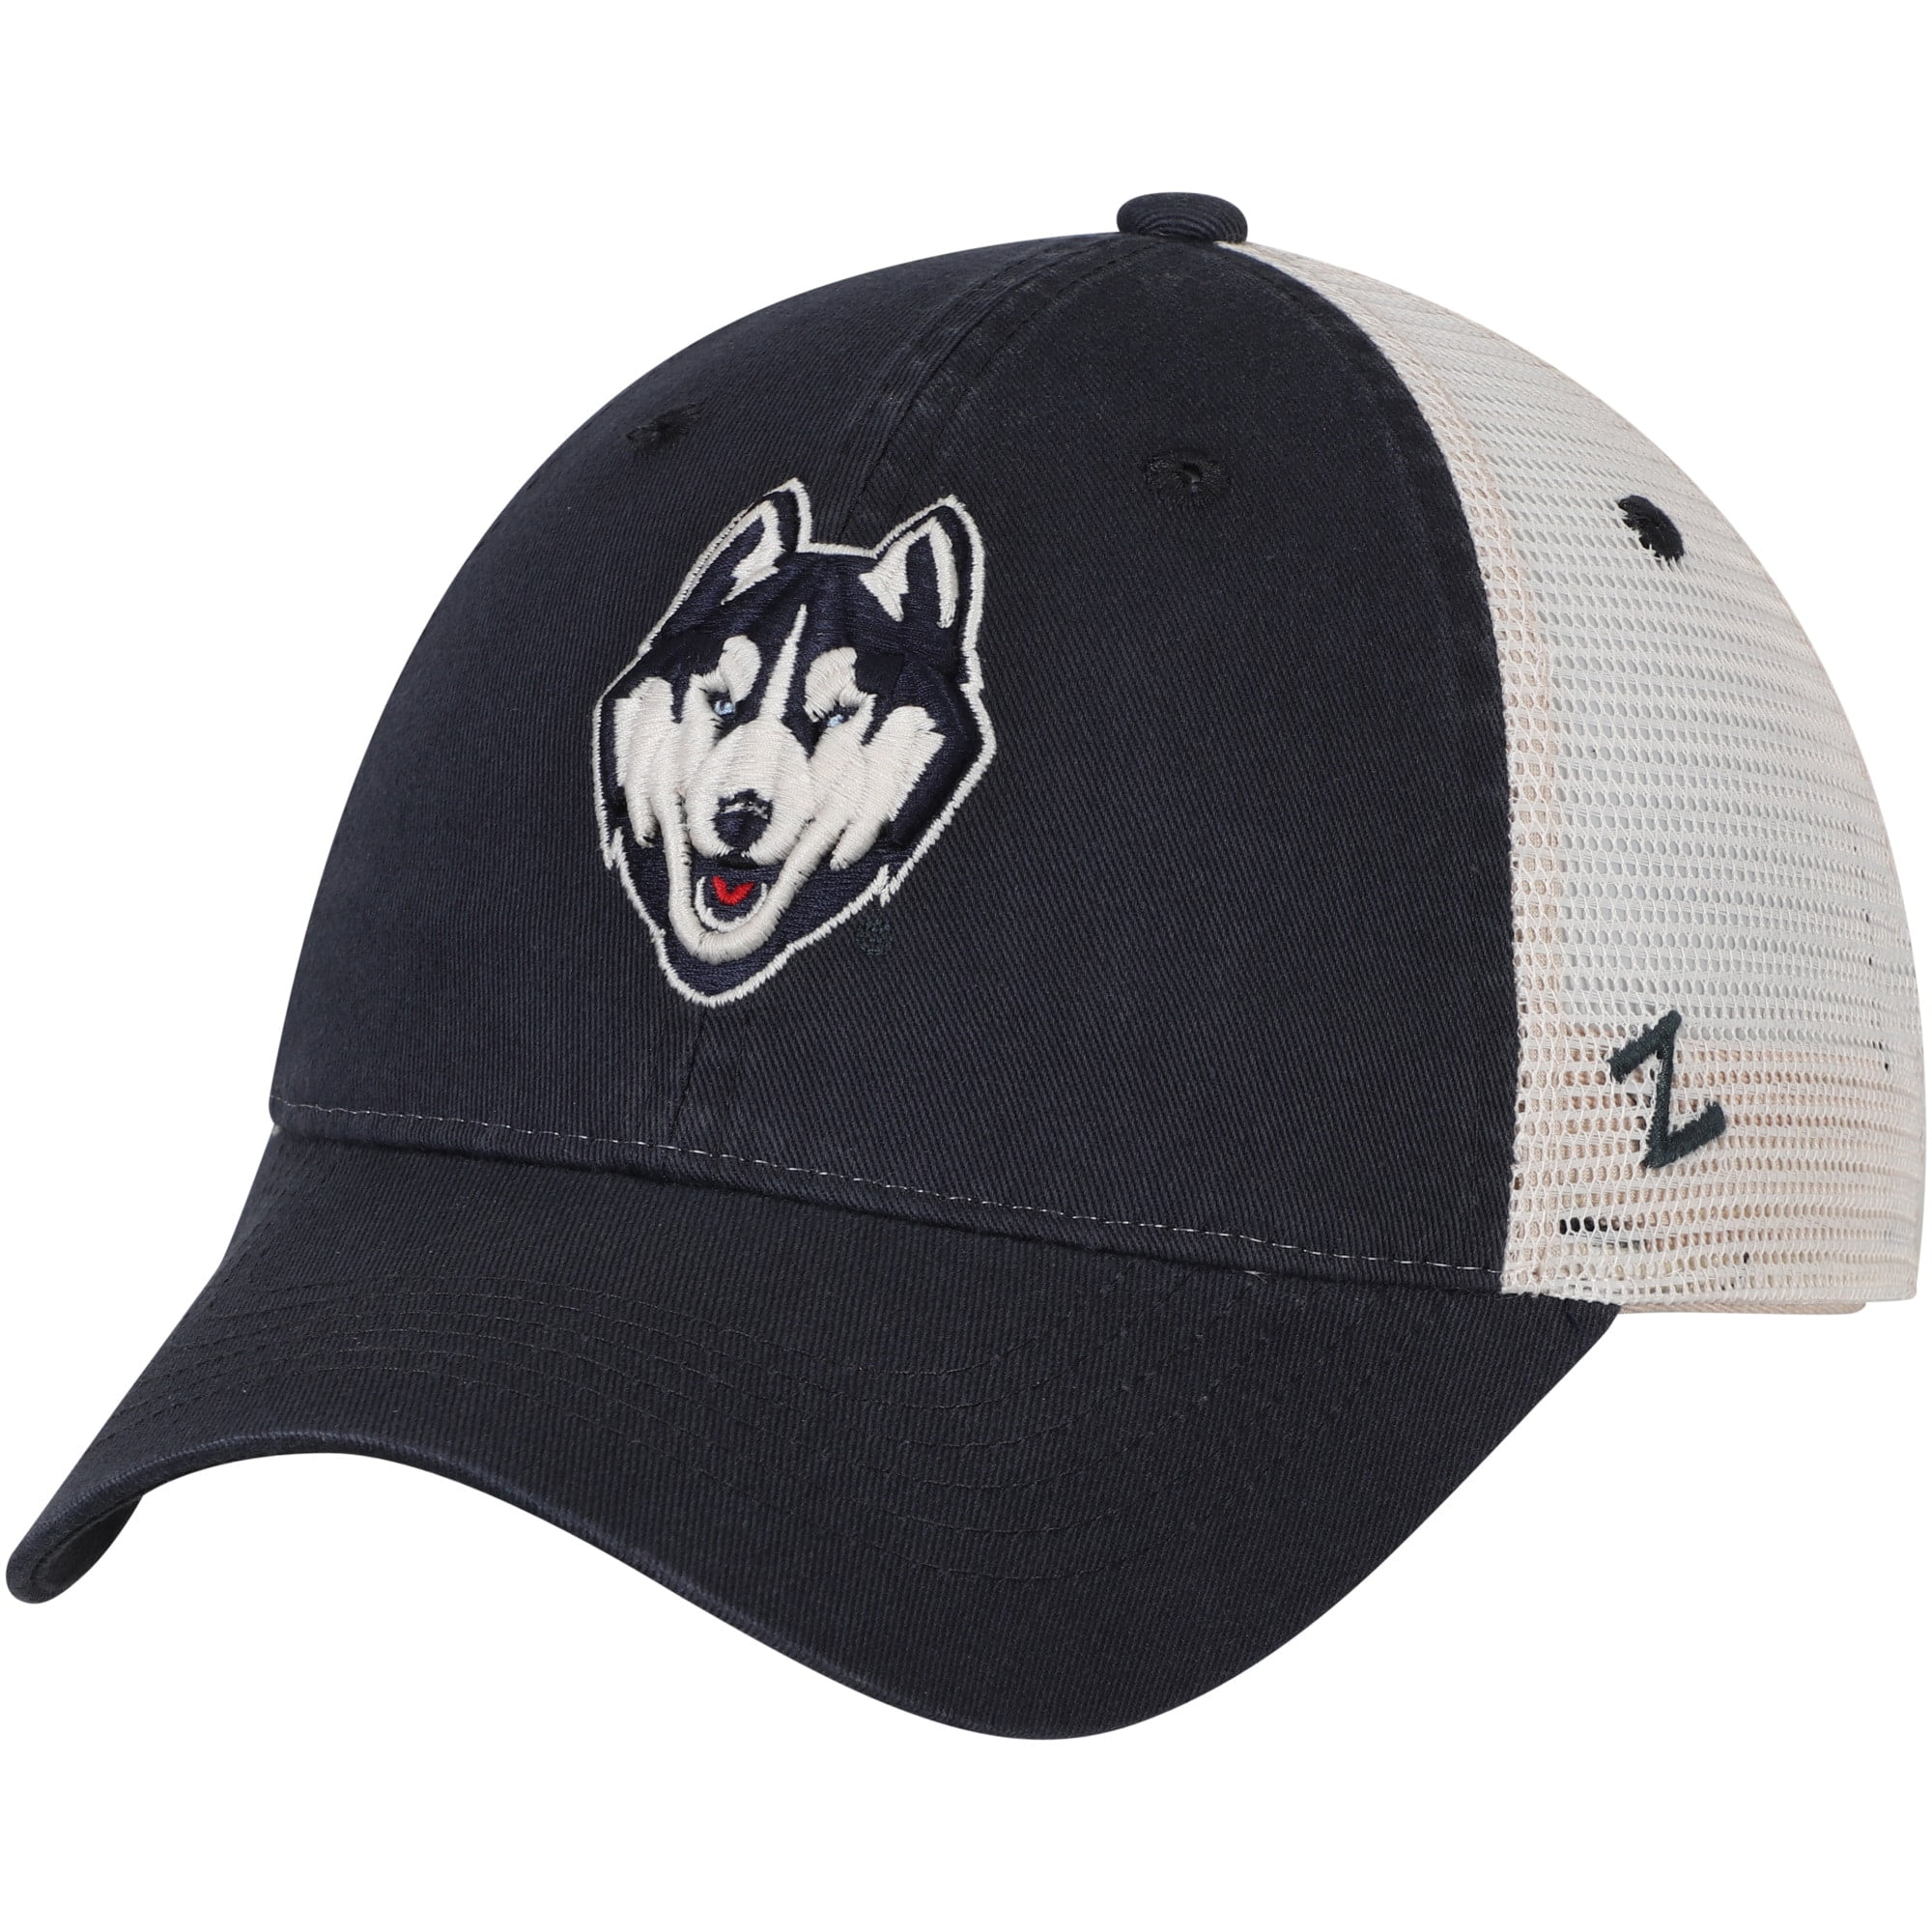 Zephyr NCAA Connecticut Huskies Men/'s Waco Adjustable Hat Adjustable Black Camo